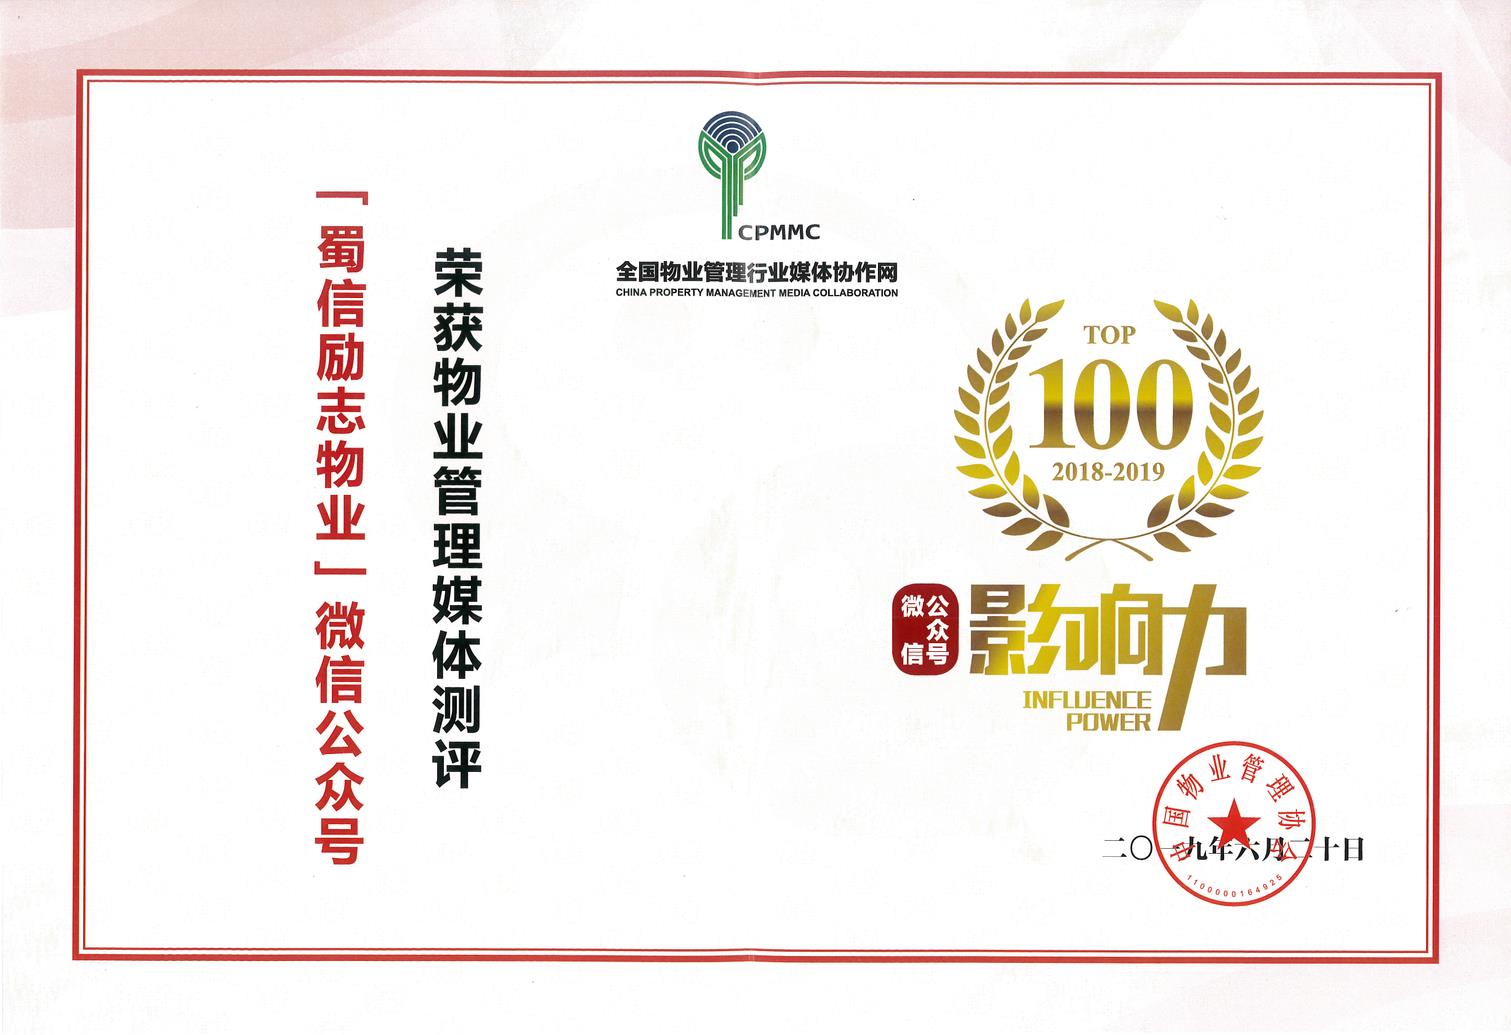 2019物业管理微信公众号TOP100第27位——蜀信物业